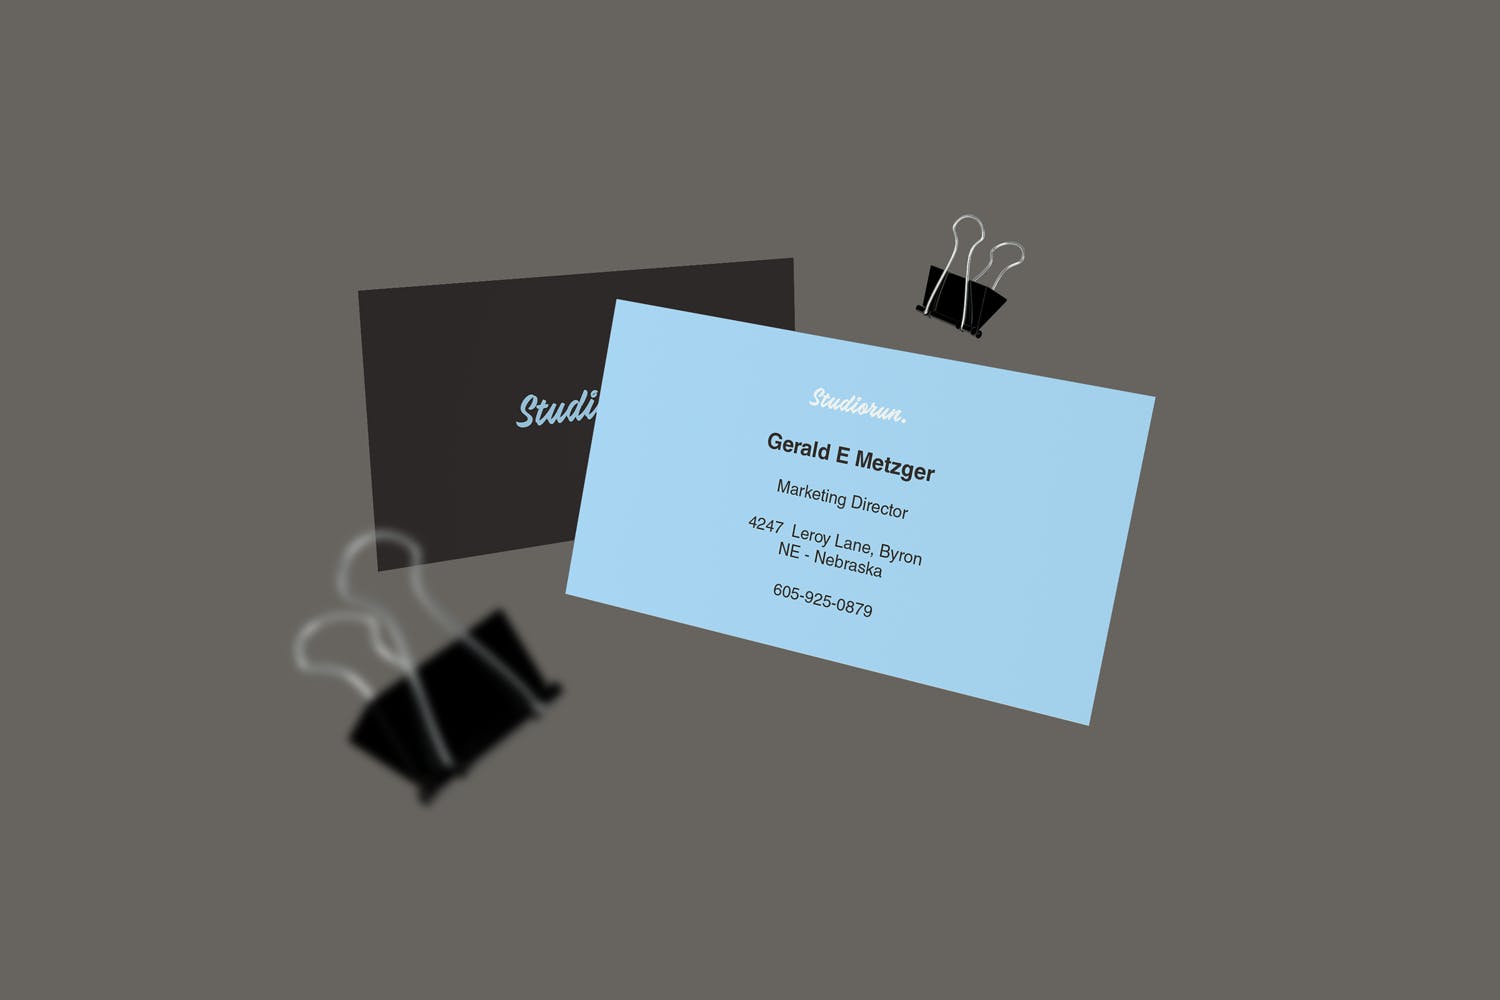 牛皮纸名片版式设计图第一素材精选 Business Card Mockups插图(3)